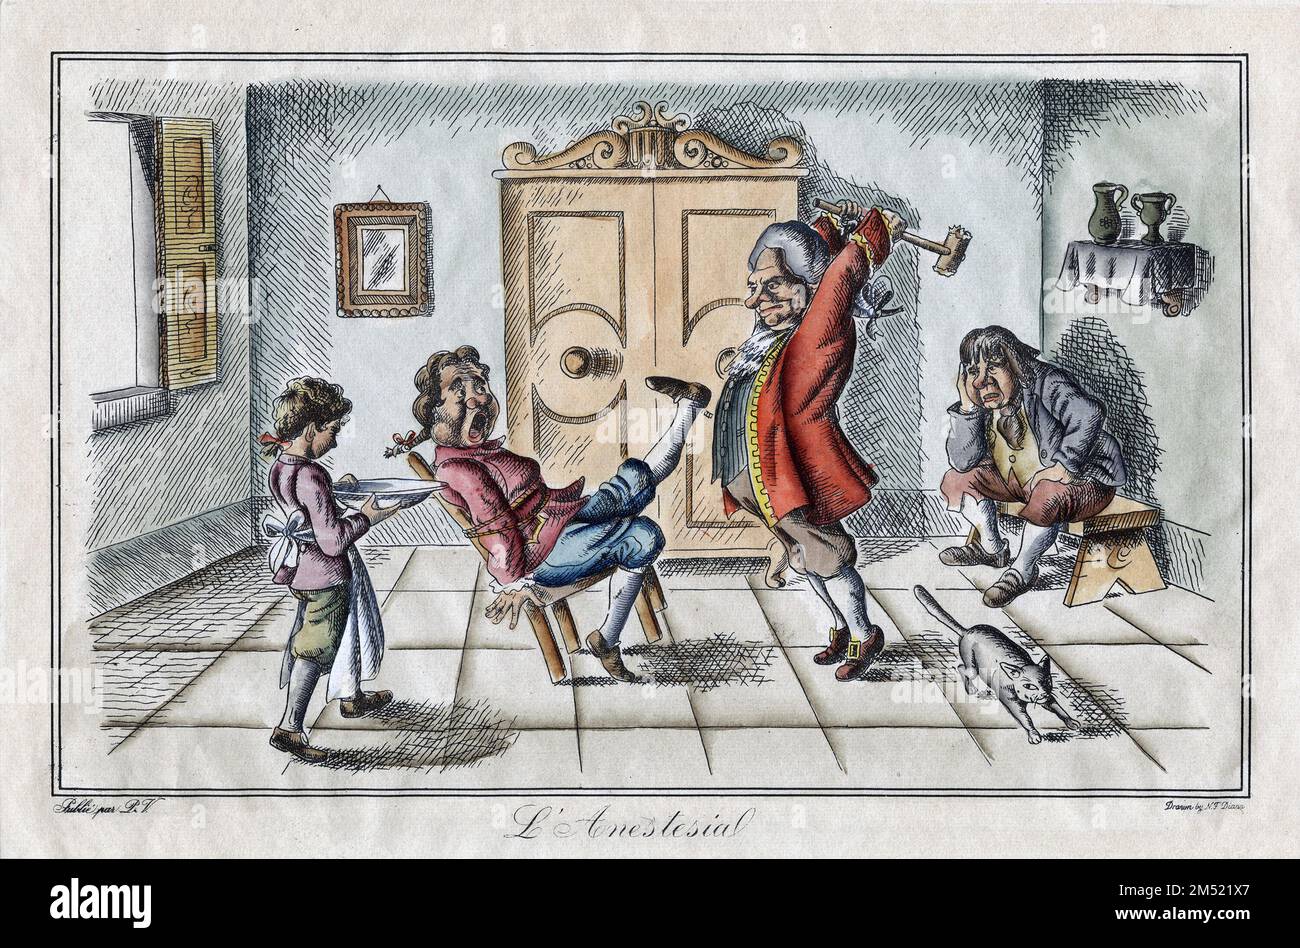 Un dentiste prépare son patient pour une extraction « indolore » avec l'aide d'un club dans cette illustration comique. Gravure italienne (peut-être une réimpression d'un original du 18th siècle). Banque D'Images